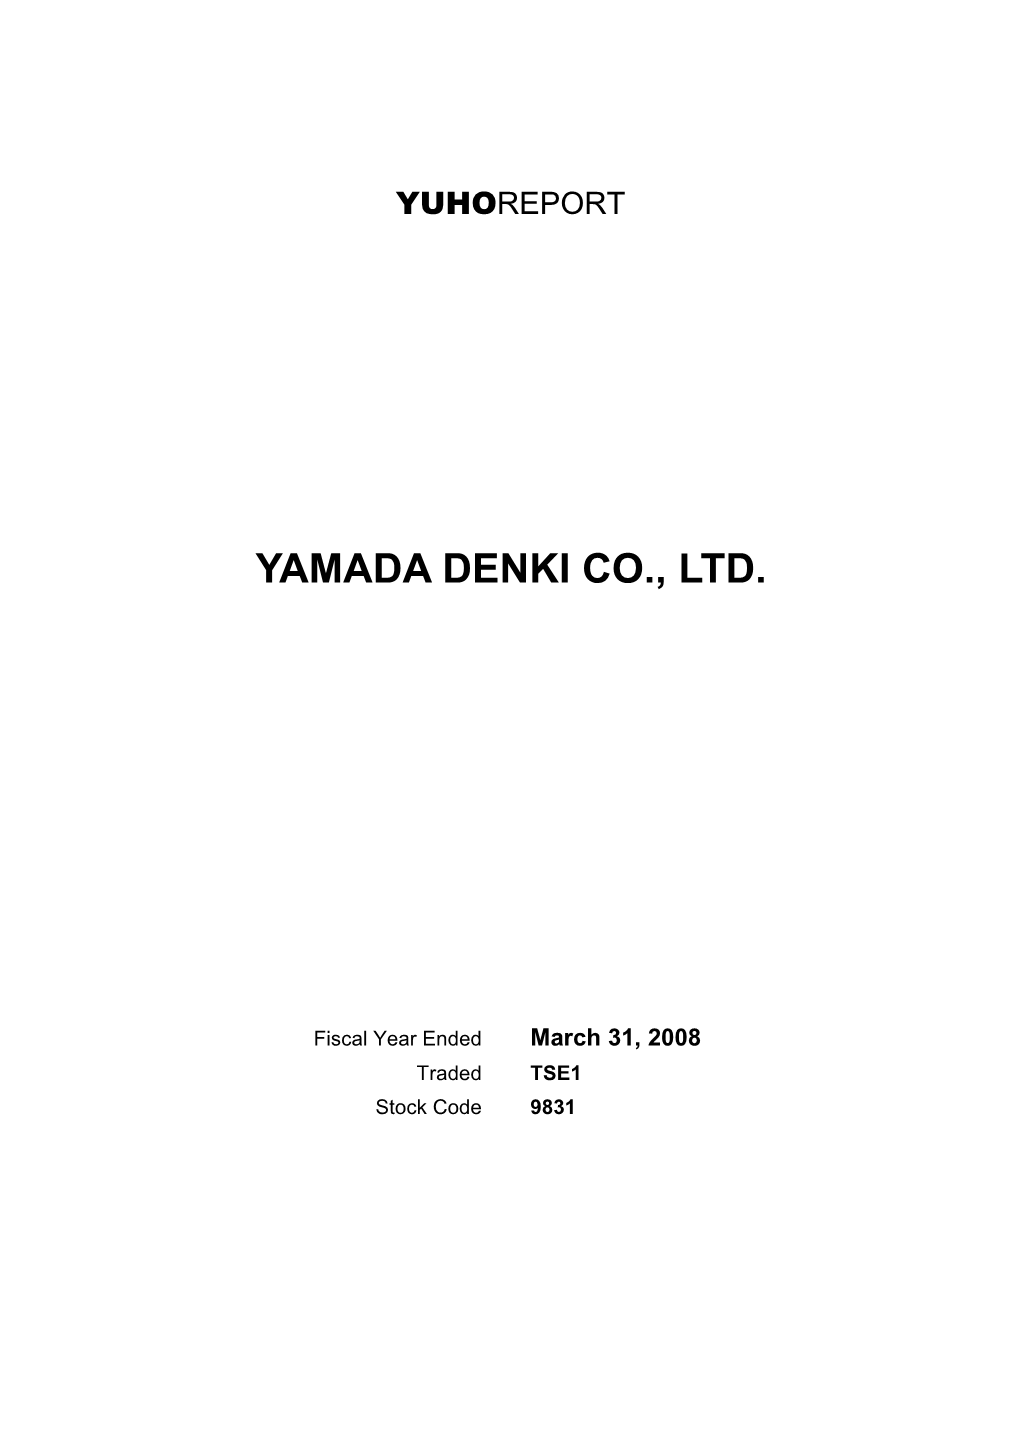 Yamada Denki Co., Ltd